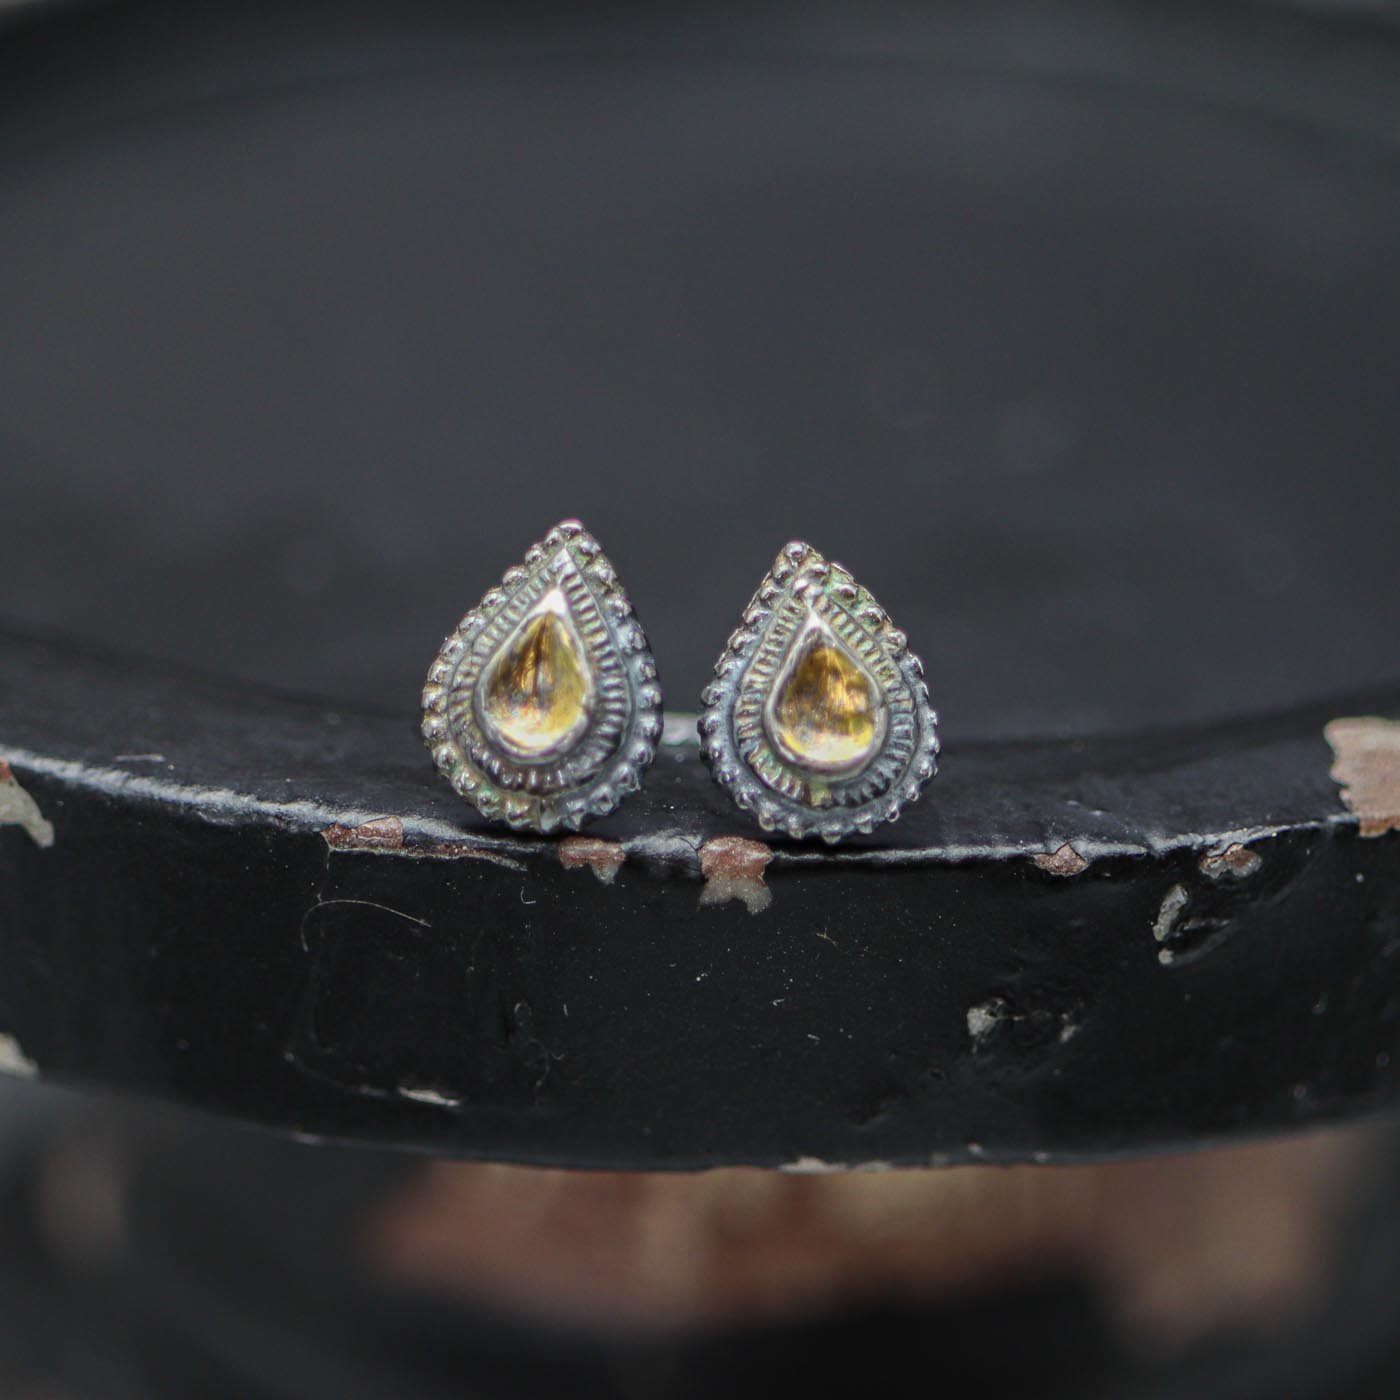 Teardrop Stud Earrings in Sterling Silver and 24k Gold